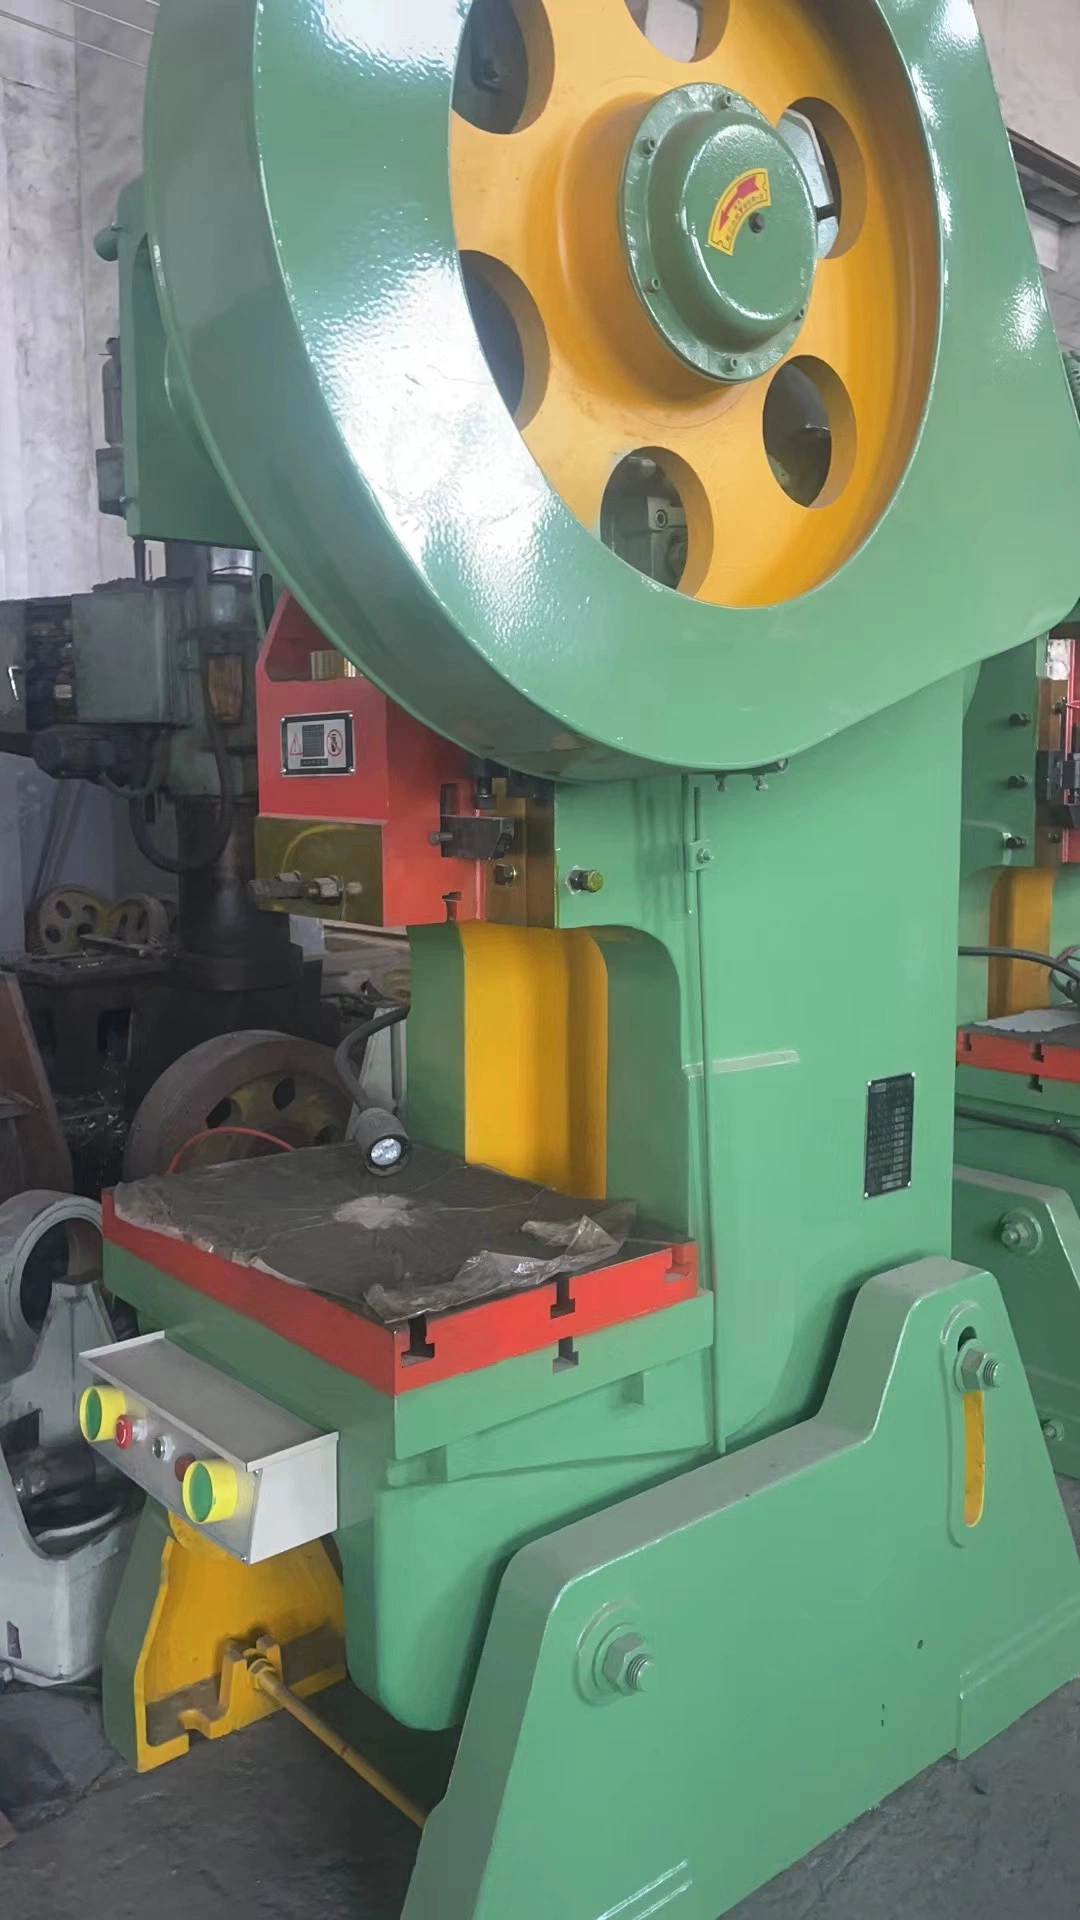 ماكينة خرم الضغط الميكانيكي للحدافة من الفئة J23-25 للبيع